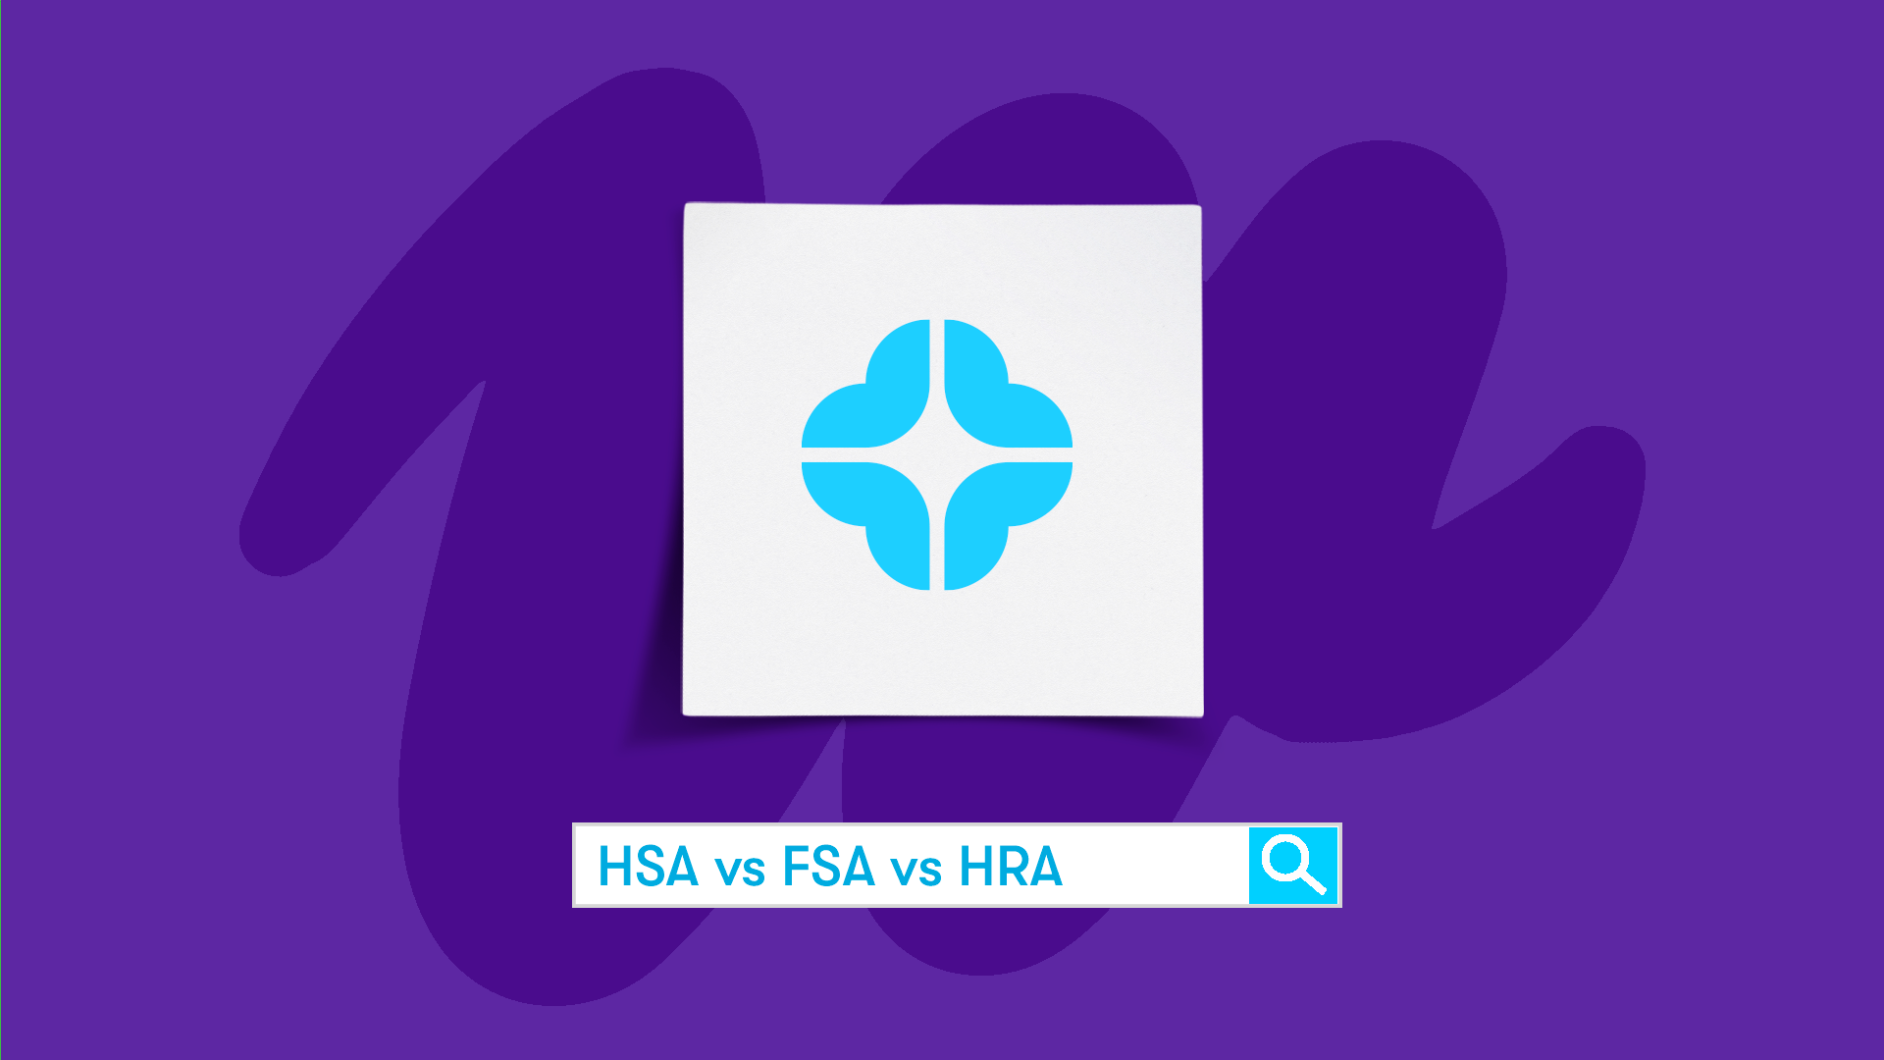 What's an HSA? HRA? FSA? 